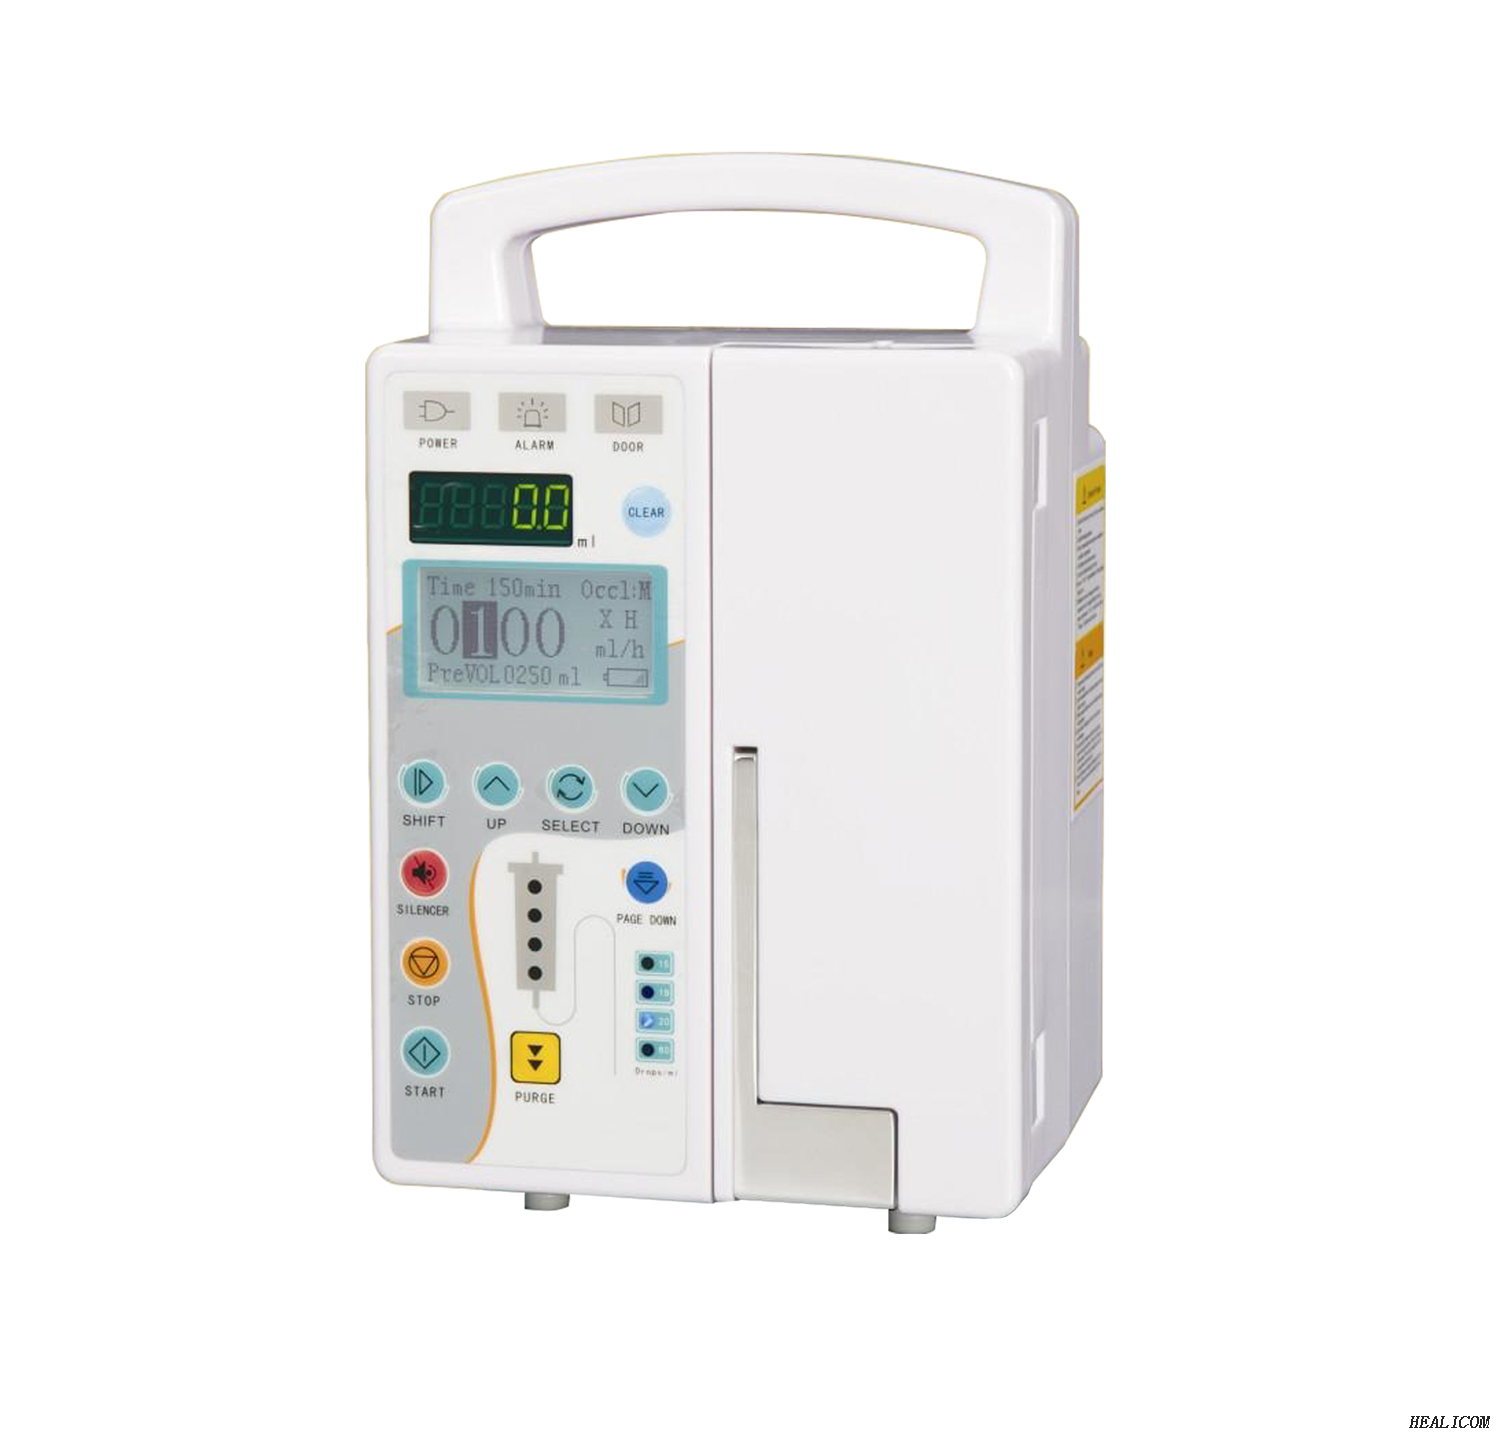 Pompa per infusione 820 Pompa per infusione portatile automatica elettrica dell'ospedale portatile dell'attrezzatura medica